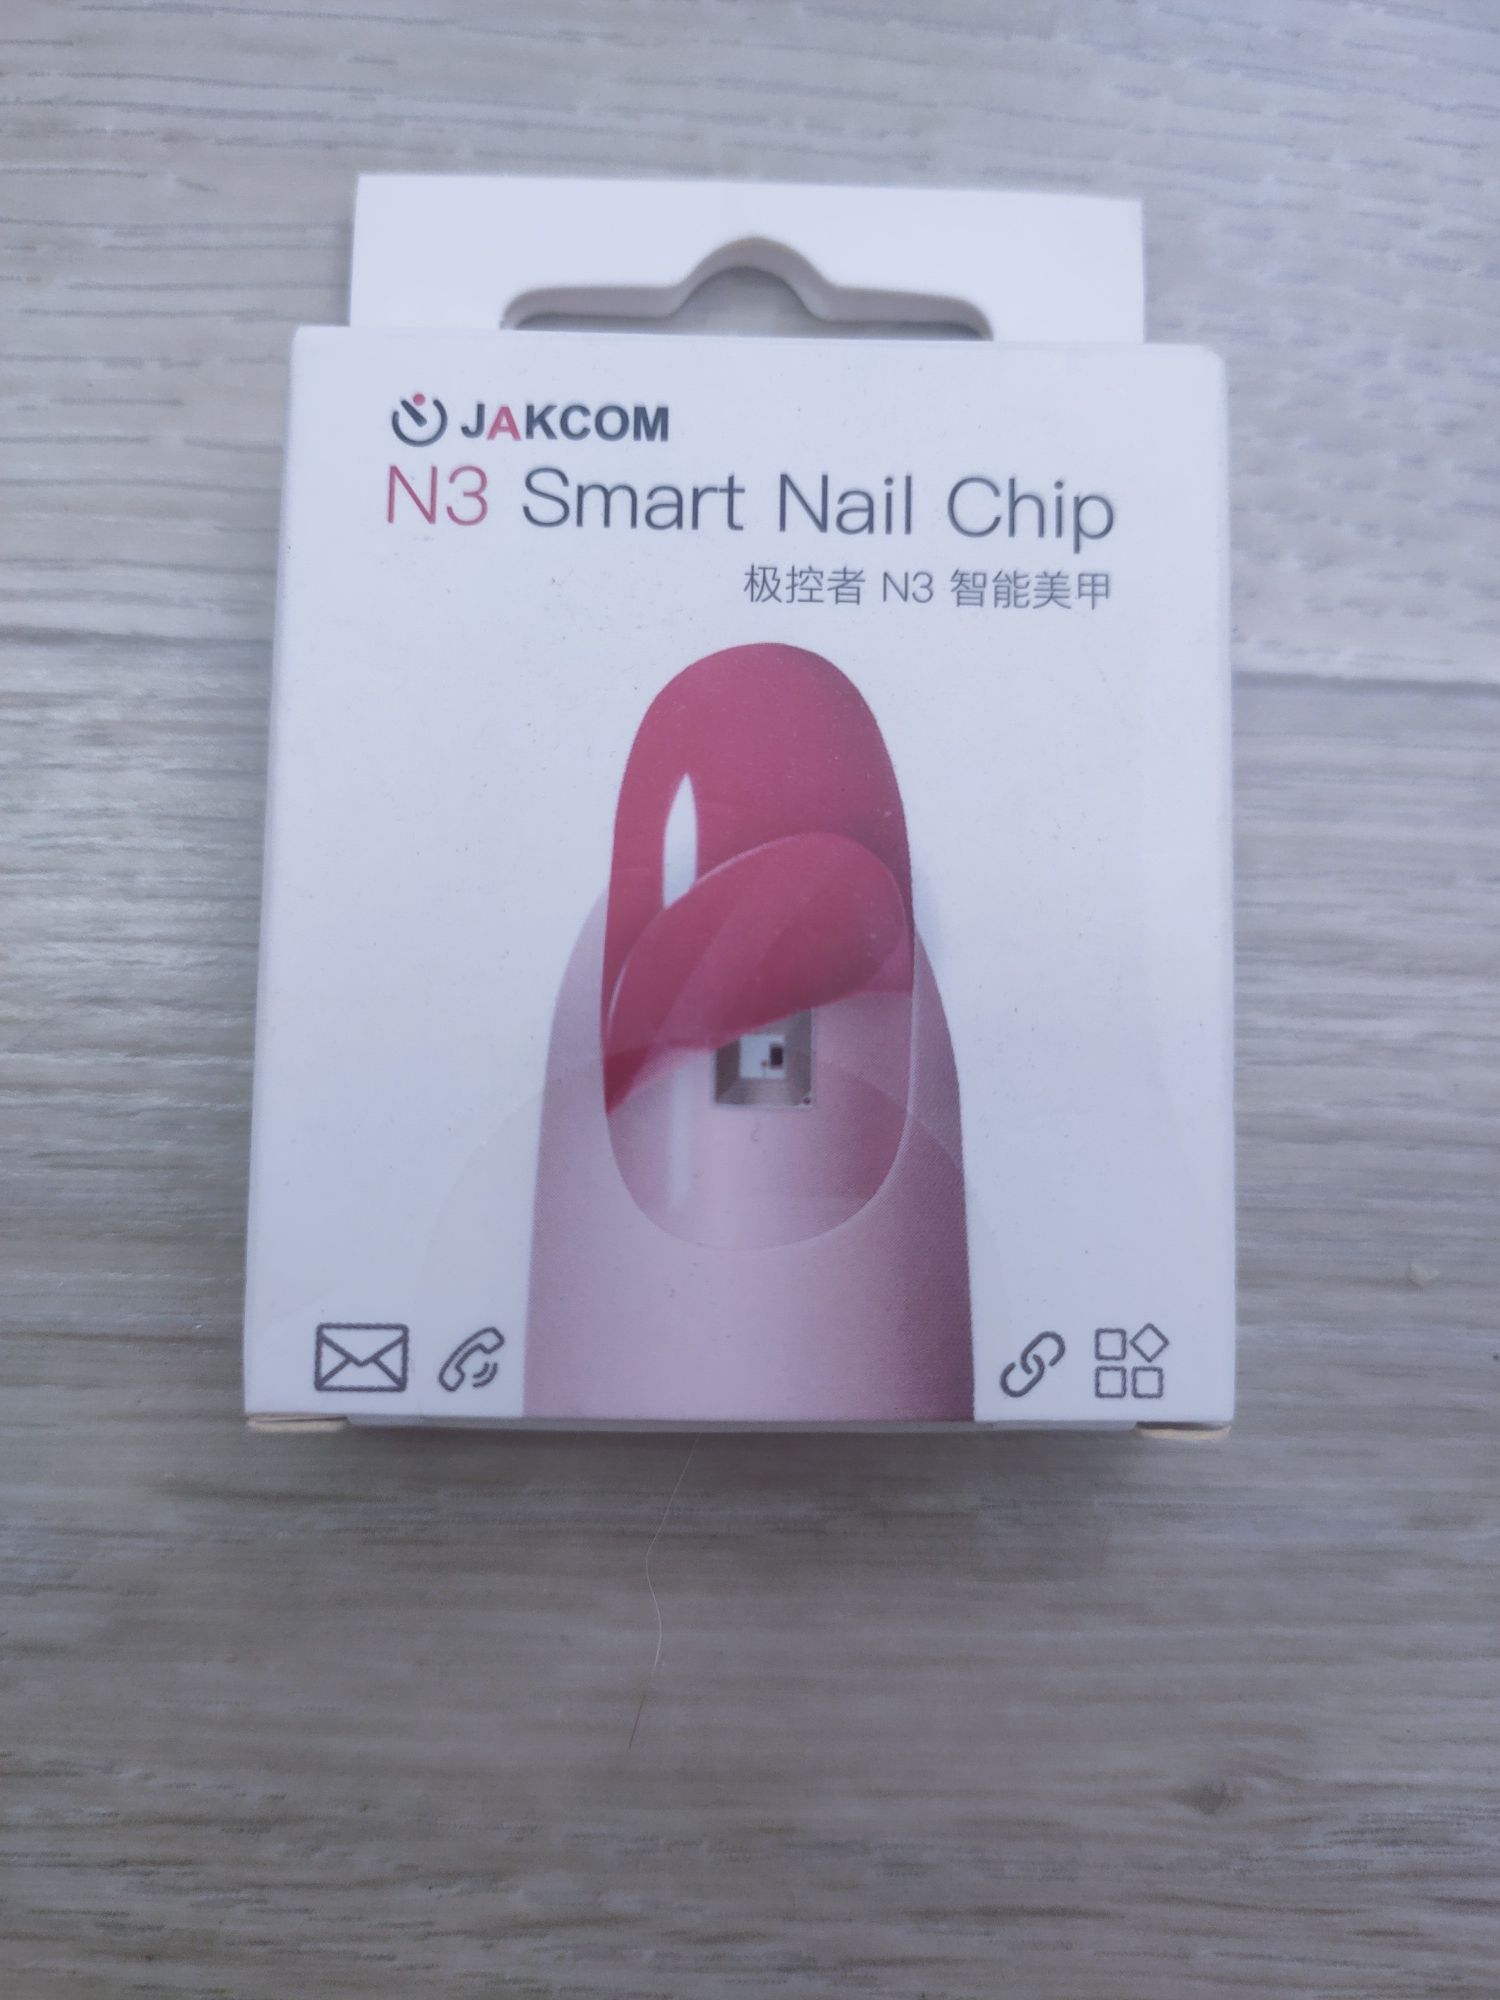 N3 Smart Nail Chip